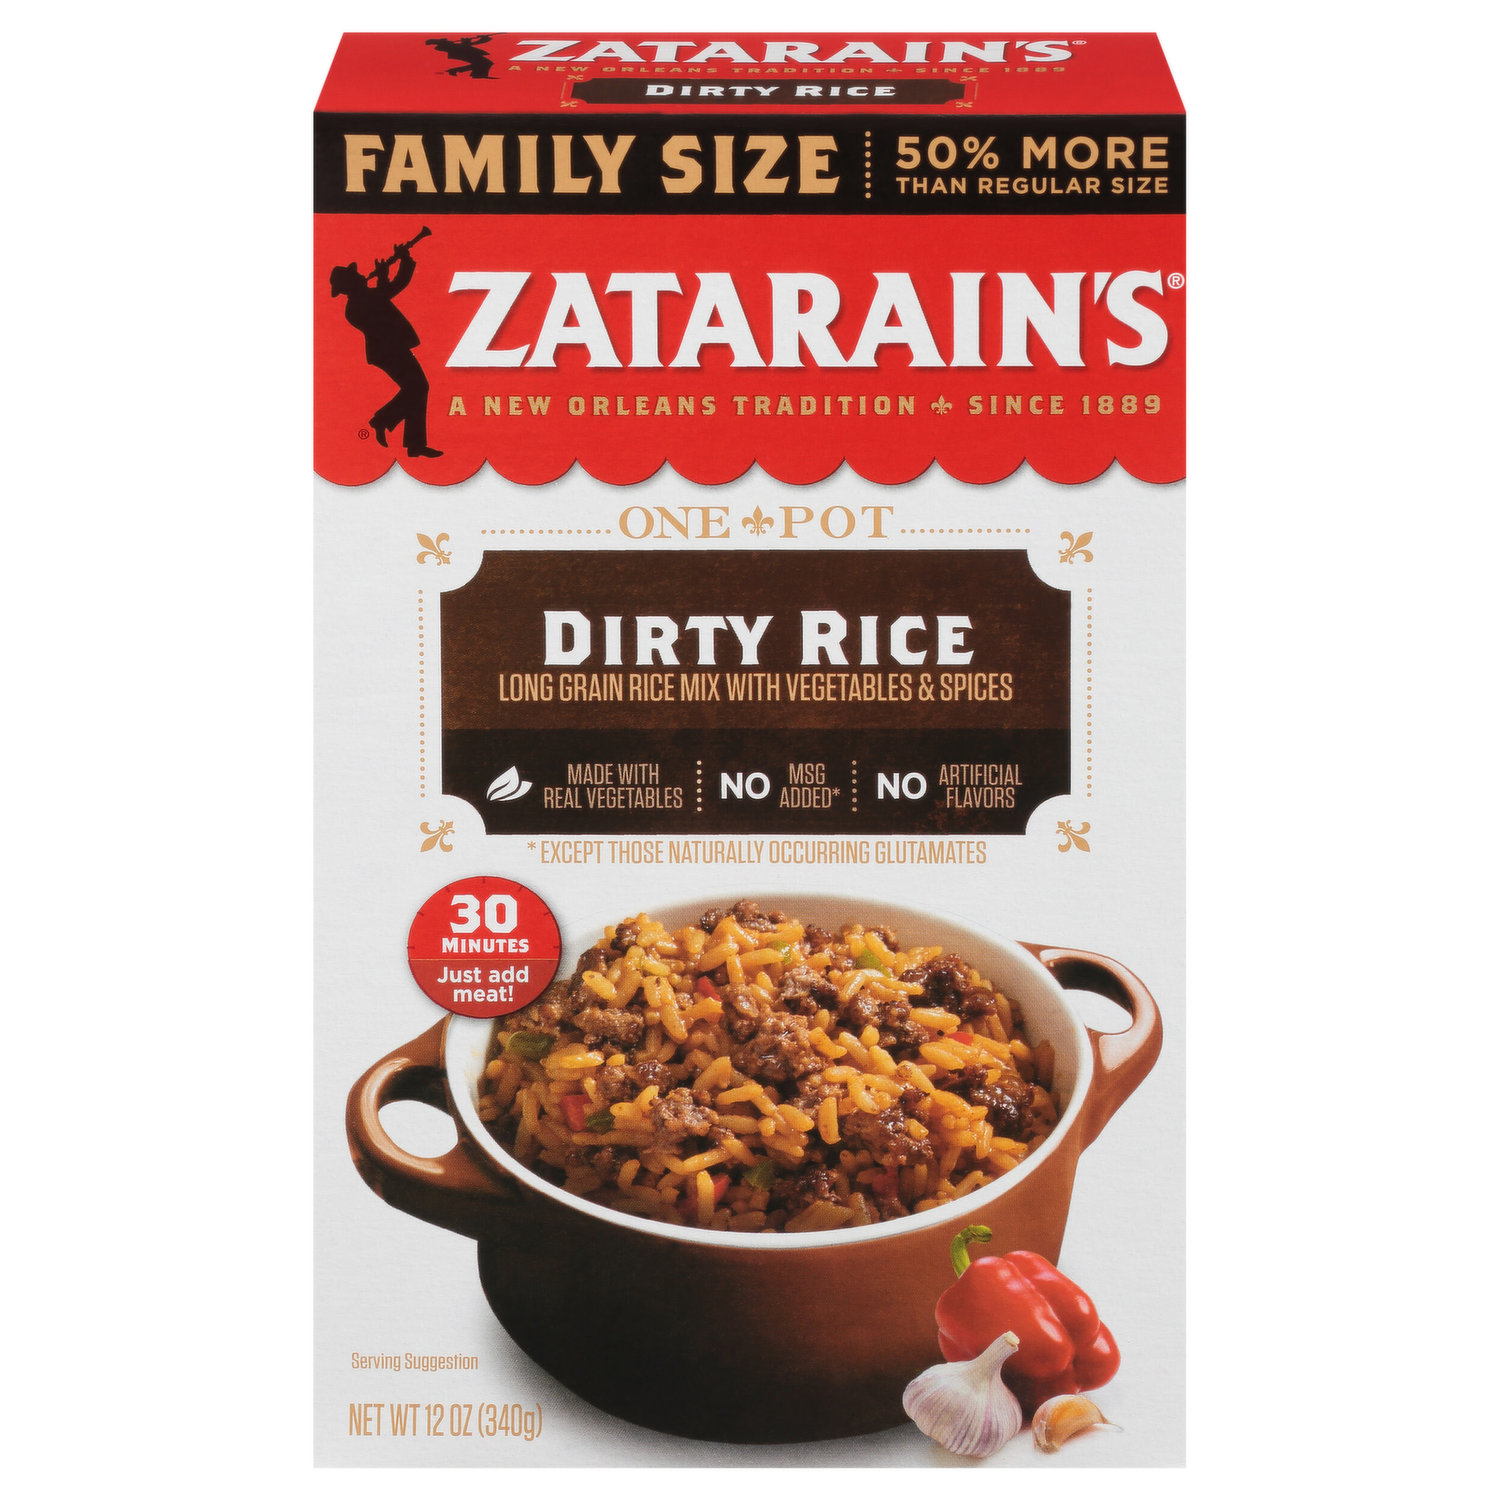 Zatarain's Frozen Meal - Chicken, Cilantro Lime Rice & Beans